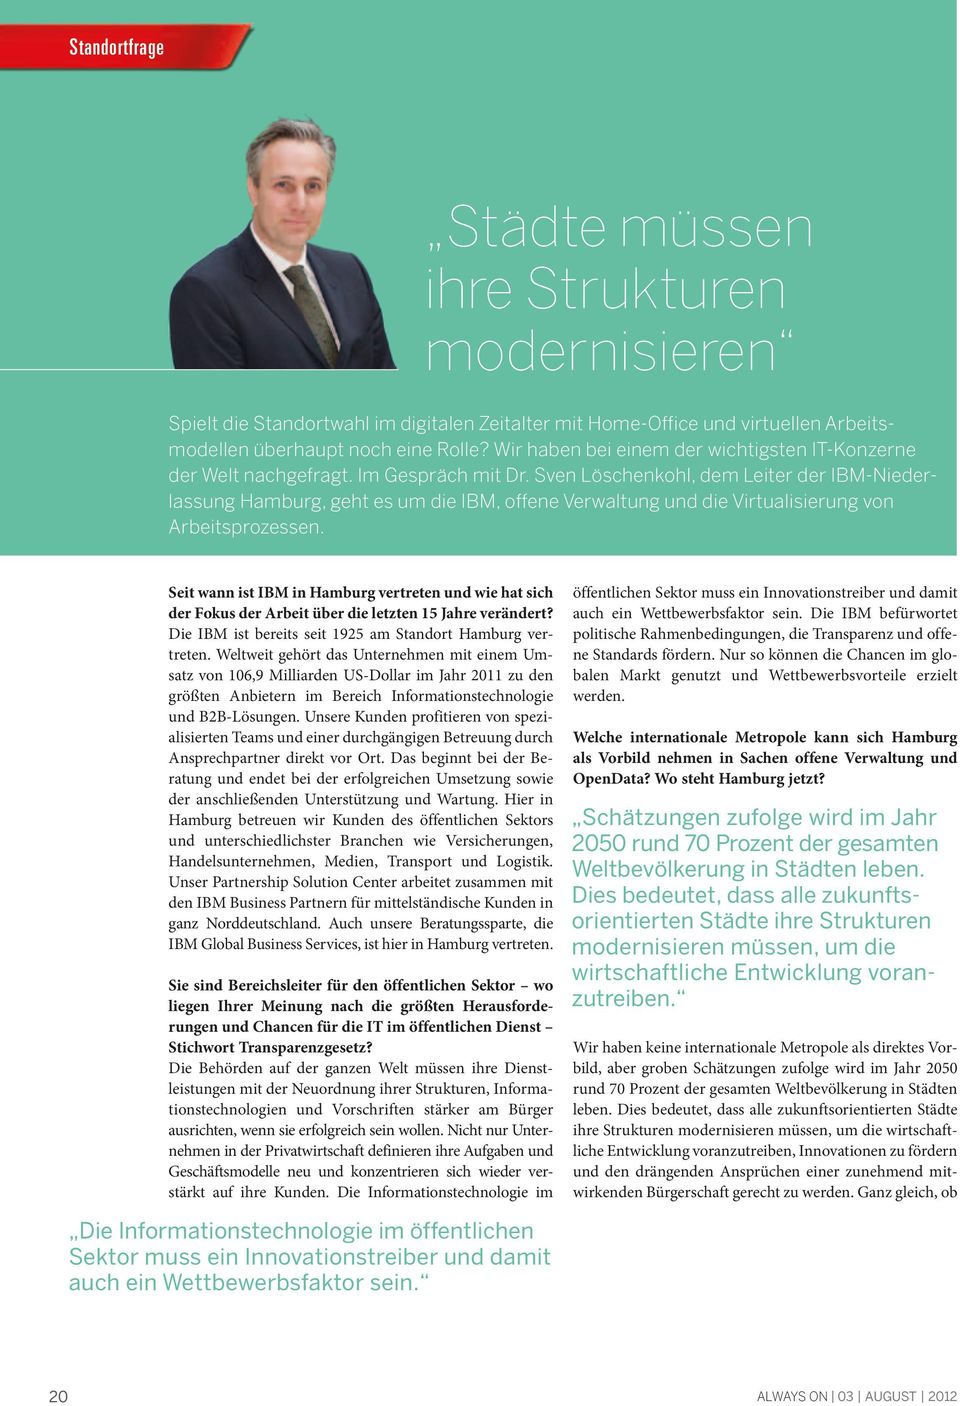 Sven Löschenkohl, dem Leiter der IBM-Niederlassung Hamburg, geht es um die IBM, offene Verwaltung und die Virtualisierung von Arbeitsprozessen.